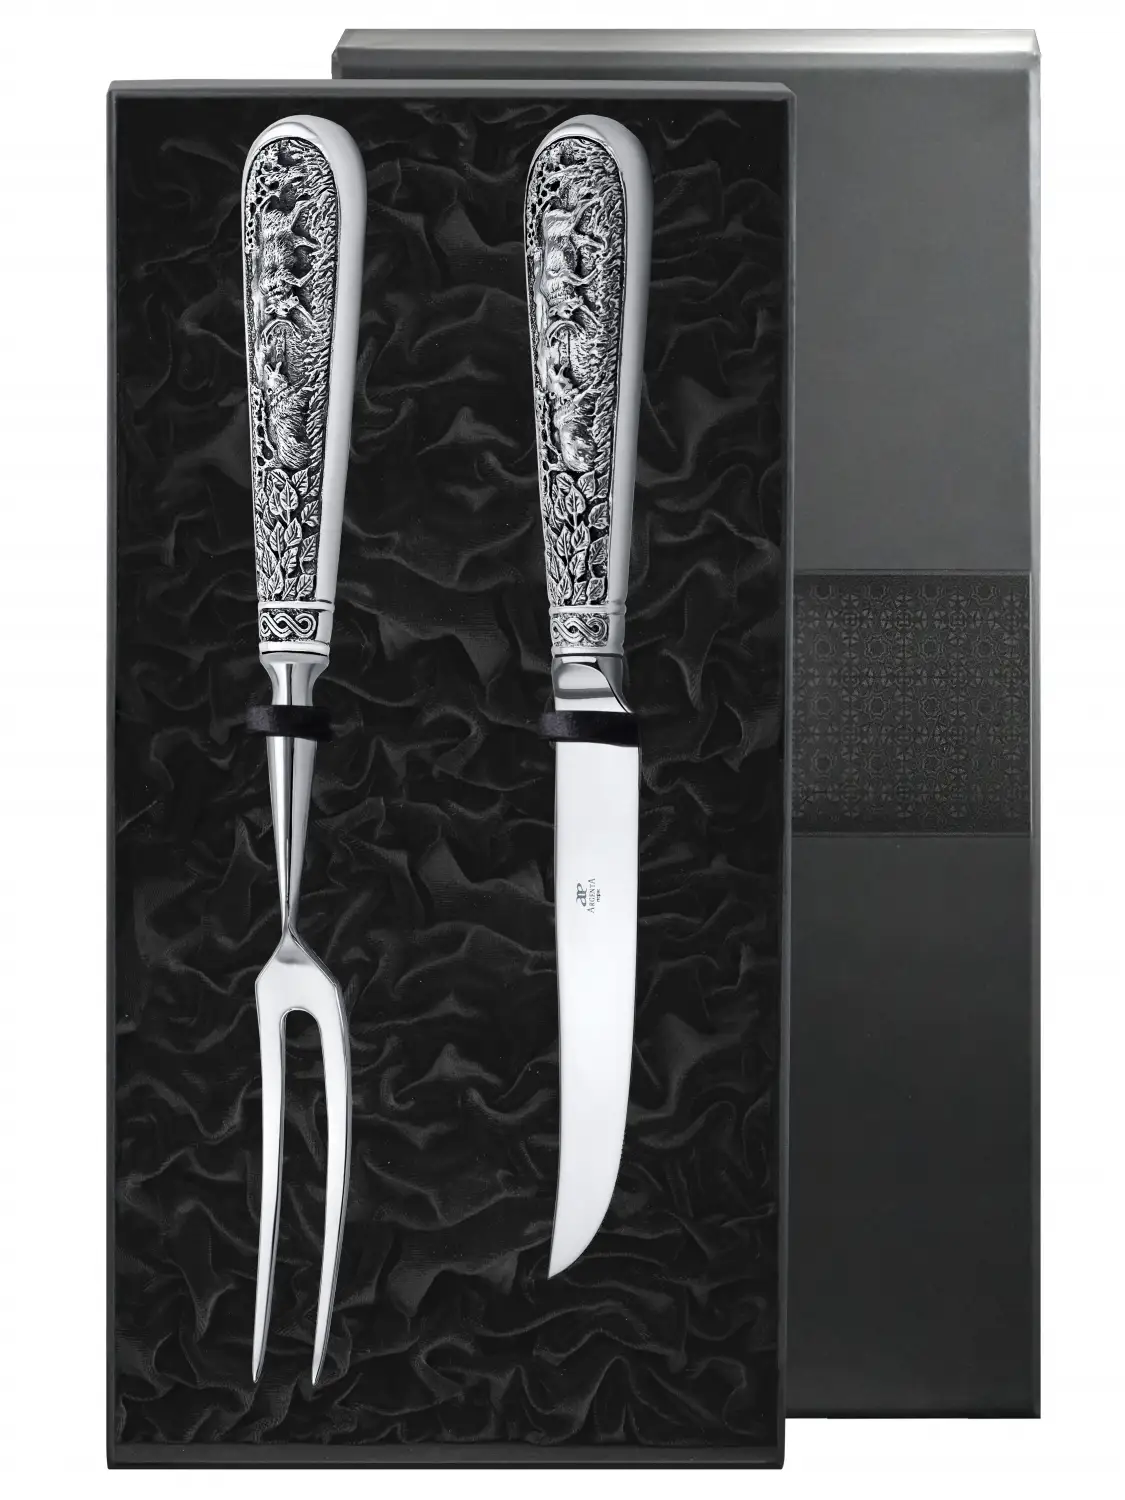 нож для мяса лось посеребренный полированный с чернением Набор для стейка Лось: вилка для мяса, нож для мяса посеребренный